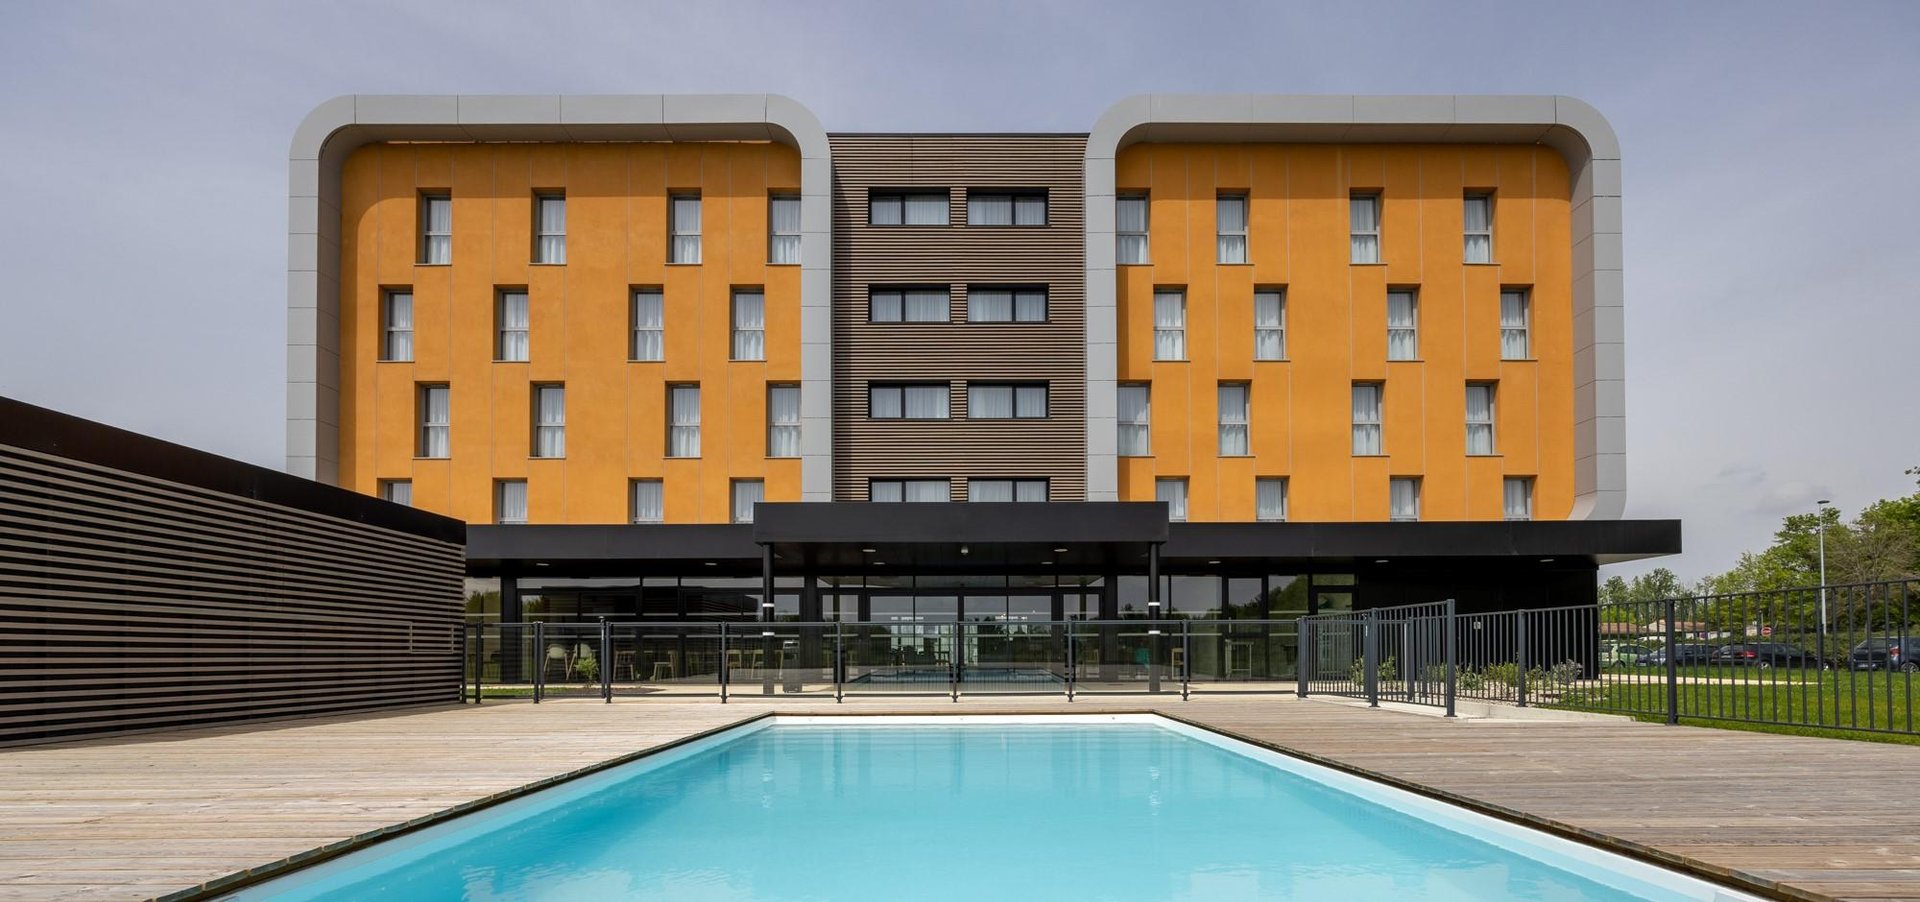 Le Relais des Deux Mers | Hôtel 3 étoiles Marmande | hôtel avec terrasse | Piscine extérieure chauffée